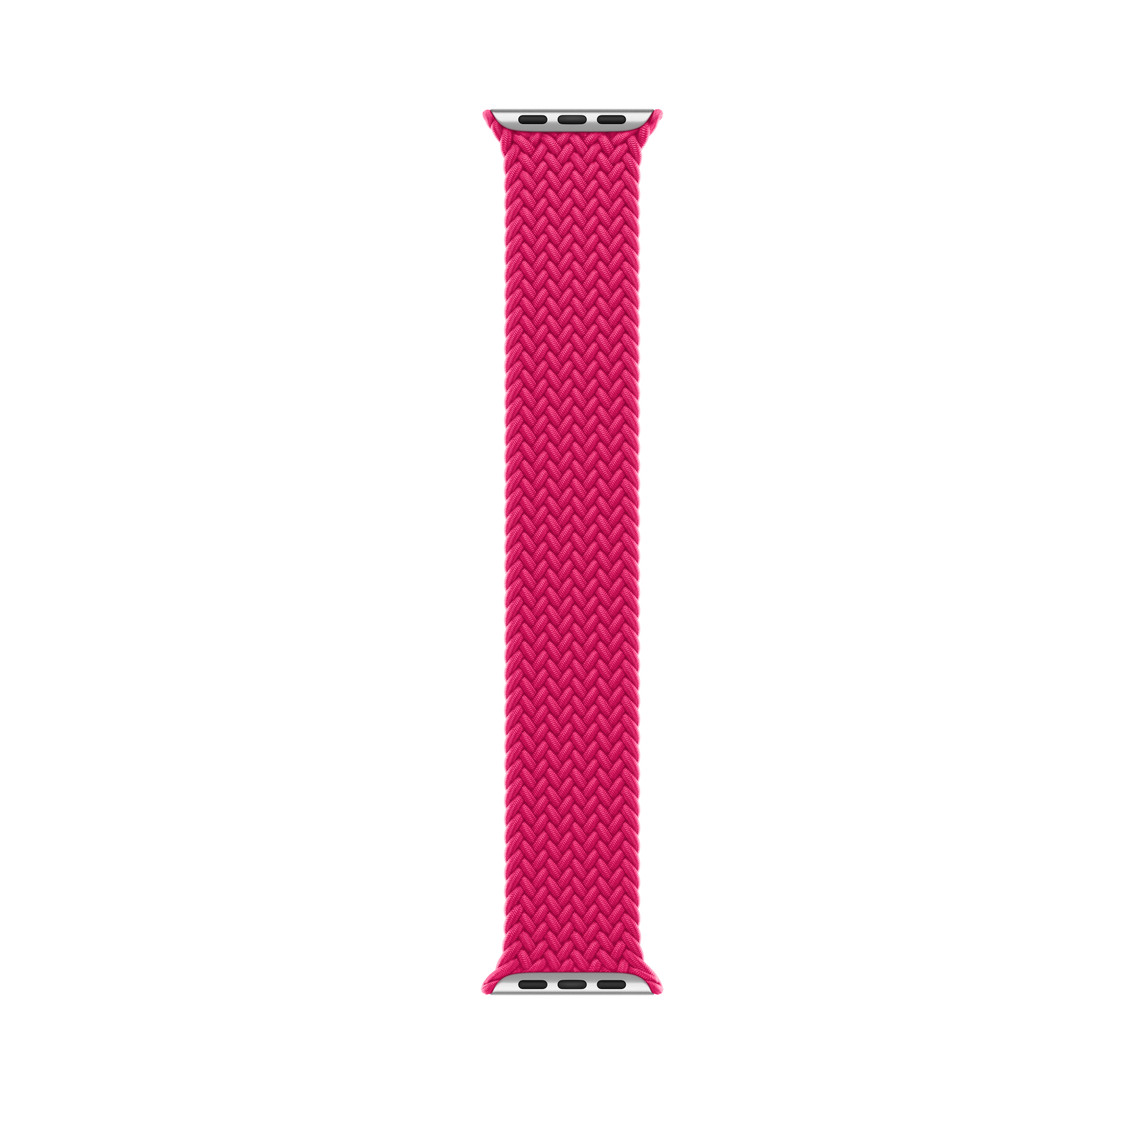 Bracelet solo tressé framboise rouge, fil de polyester et de silicone tressé, sans fermoir ni boucle